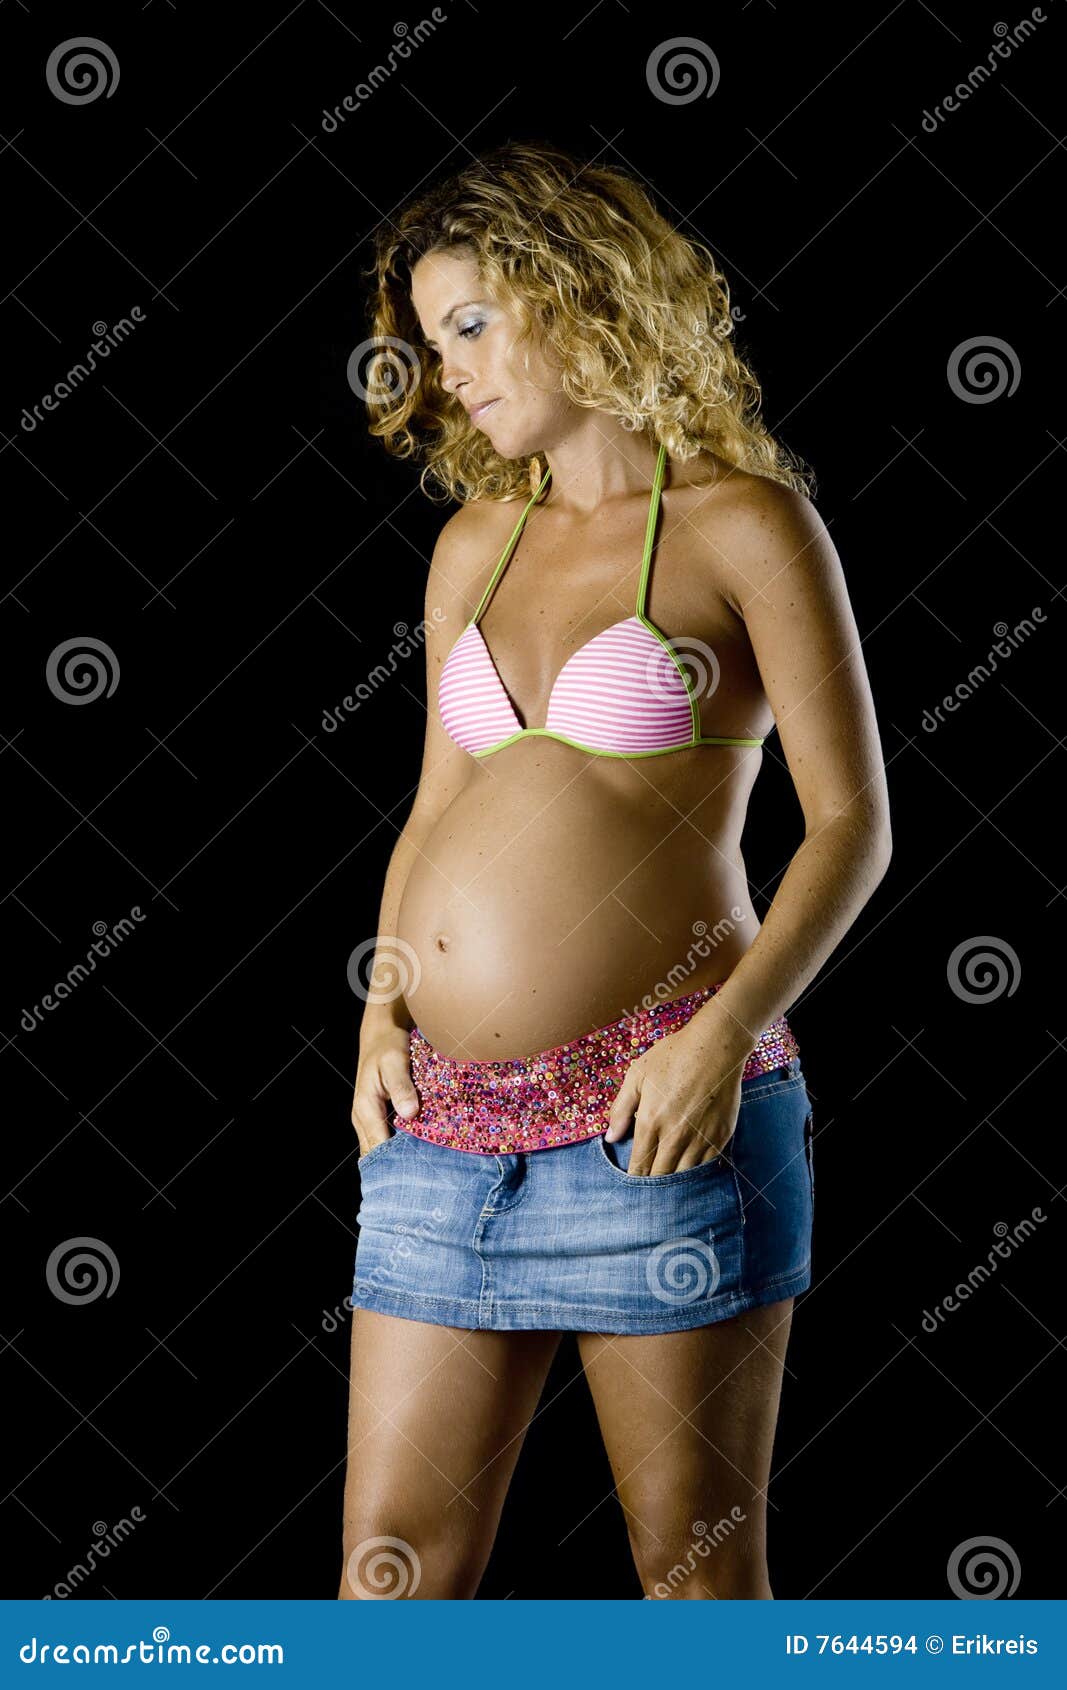 1,173 Pregnant Woman Bikini Stock Photos